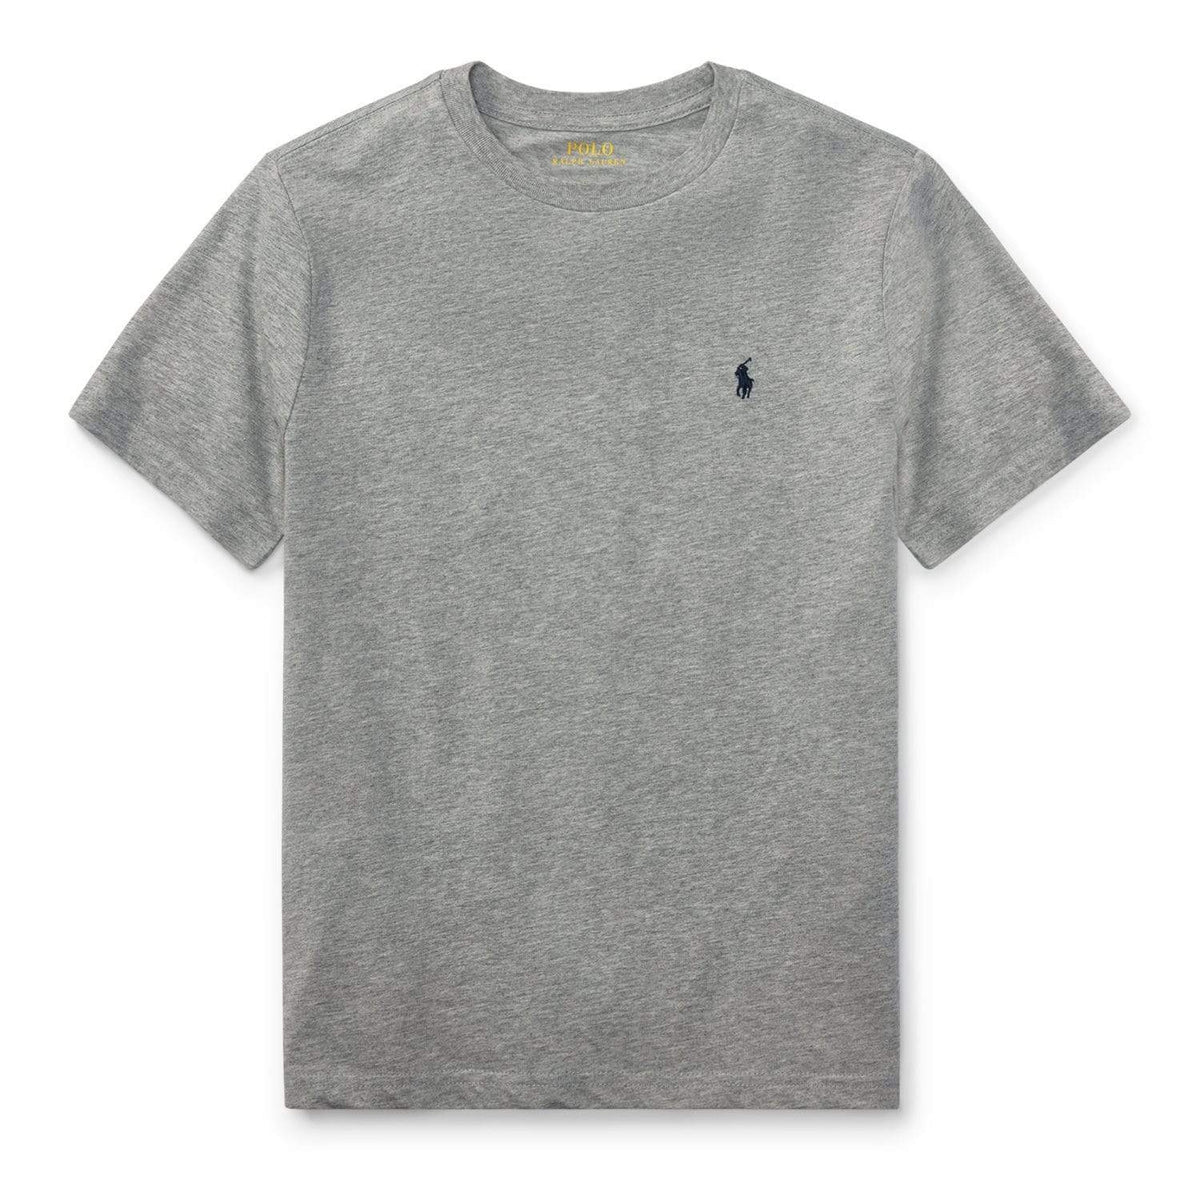 Polo Ralph Lauren T-Shirts Boys Polo Ralph Lauren Grey T-Shirt